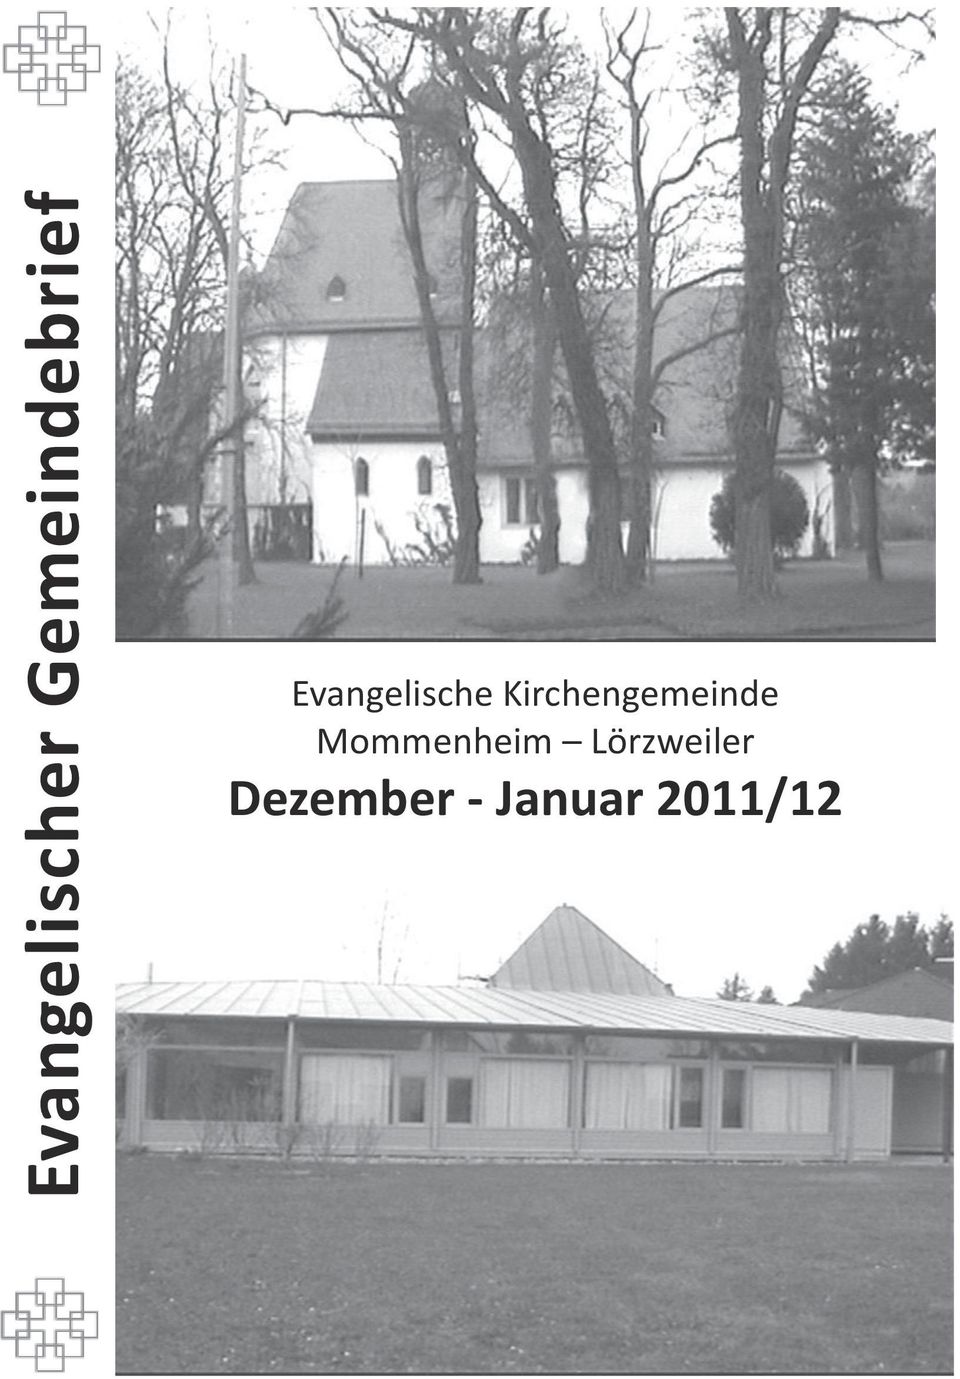 Kirchengemeinde Mommenheim